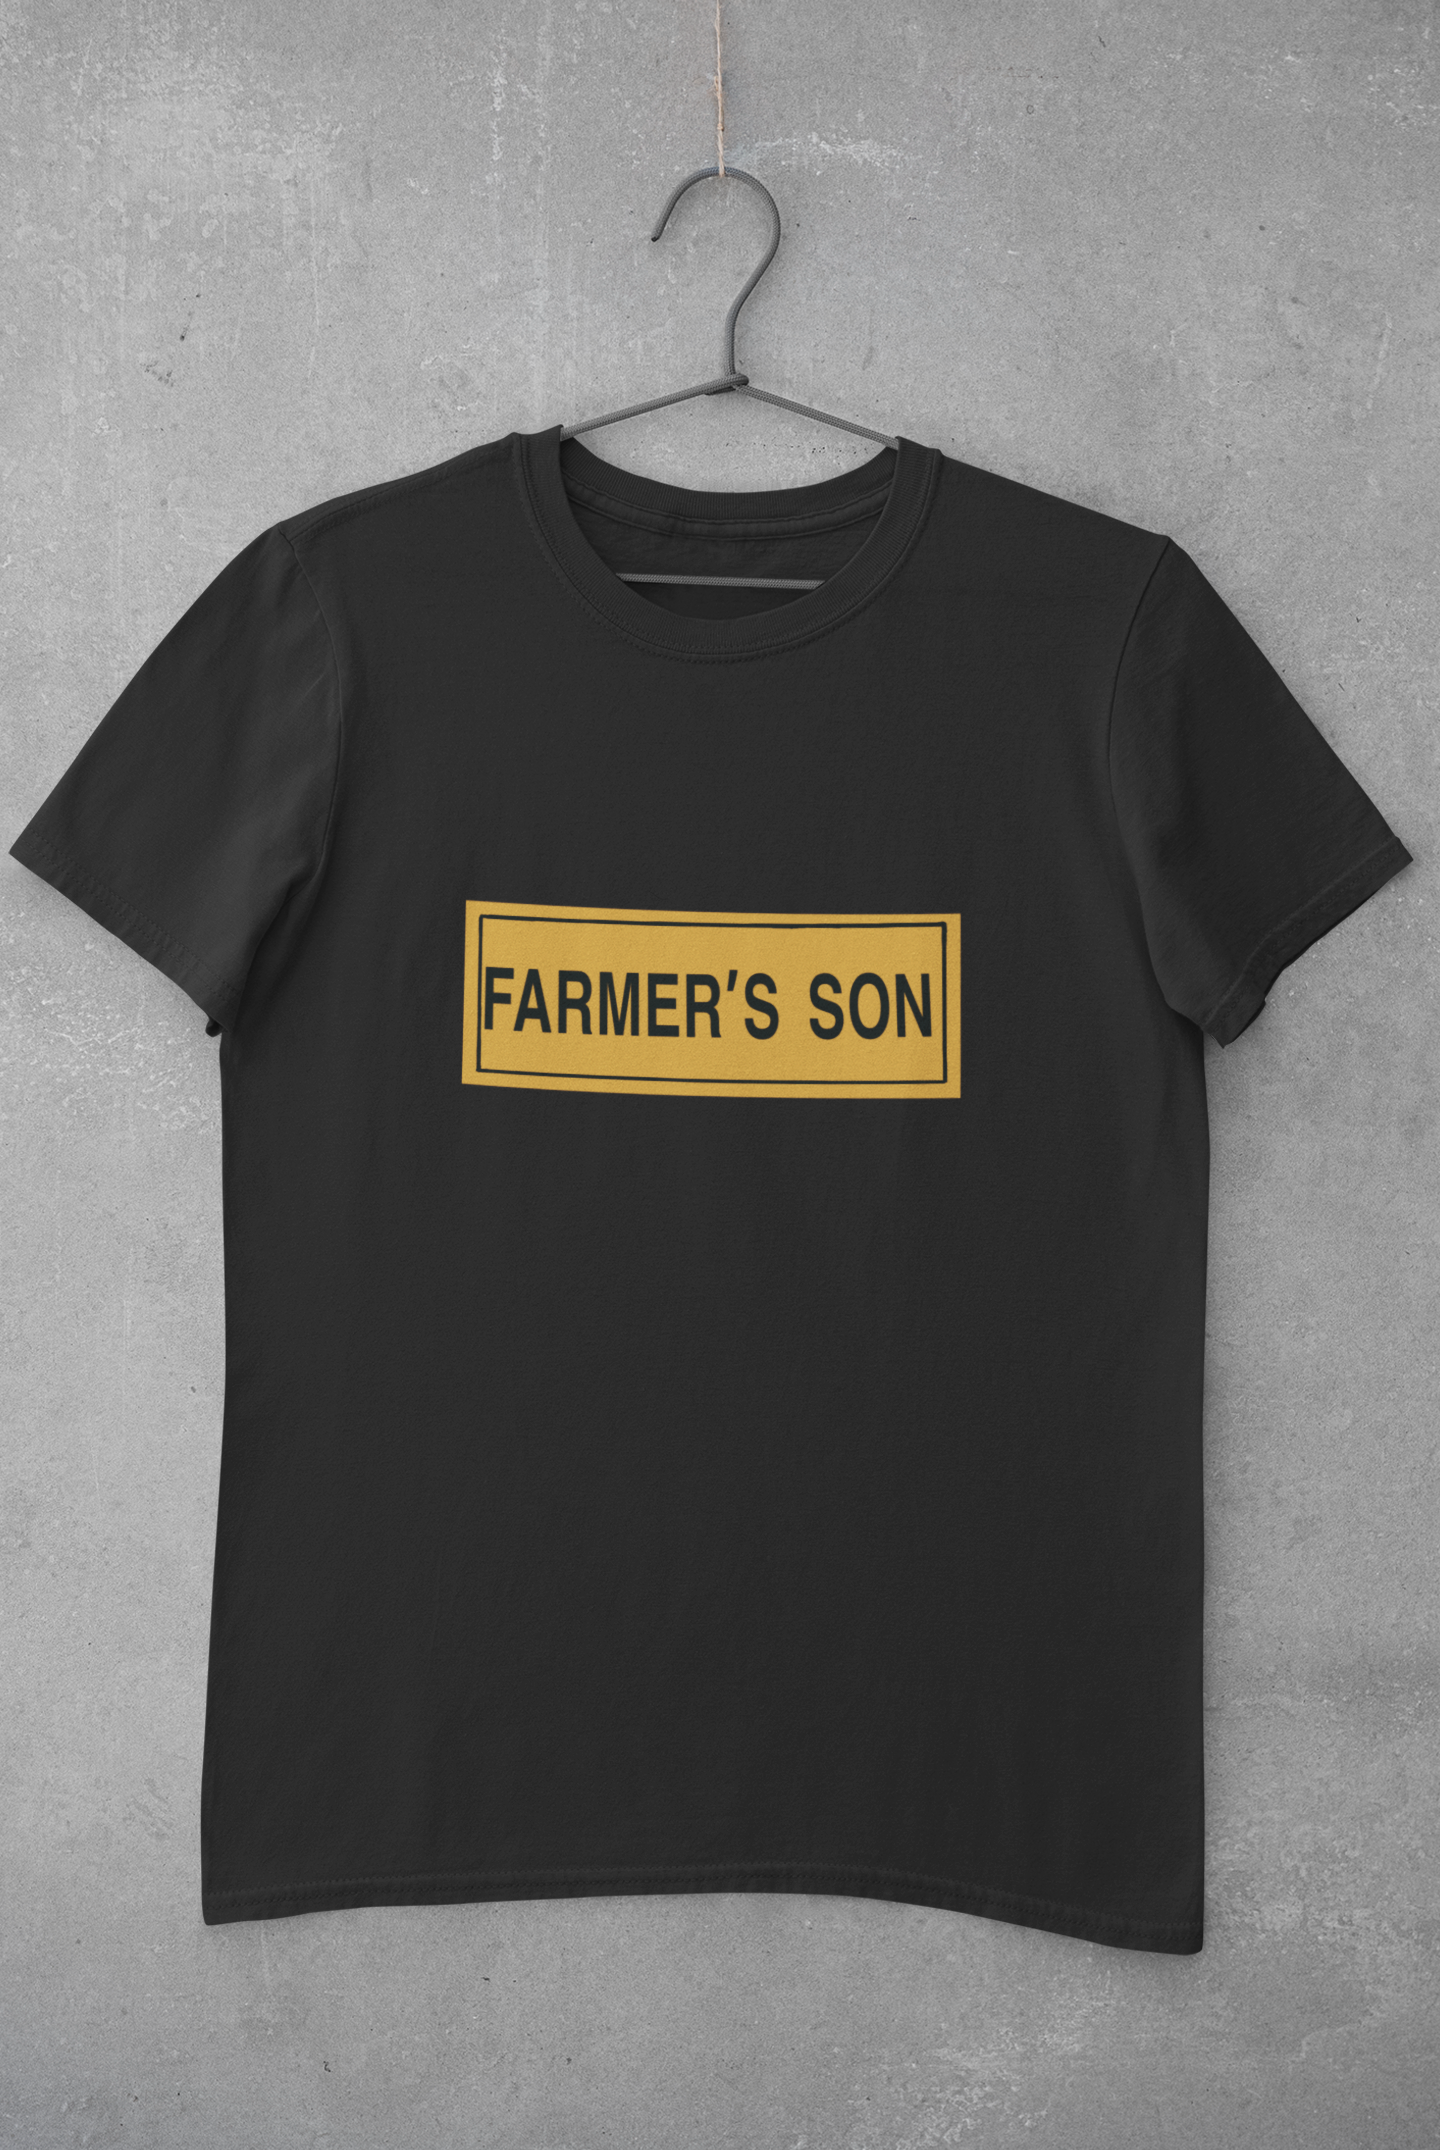 Farmer’s son T-shirt